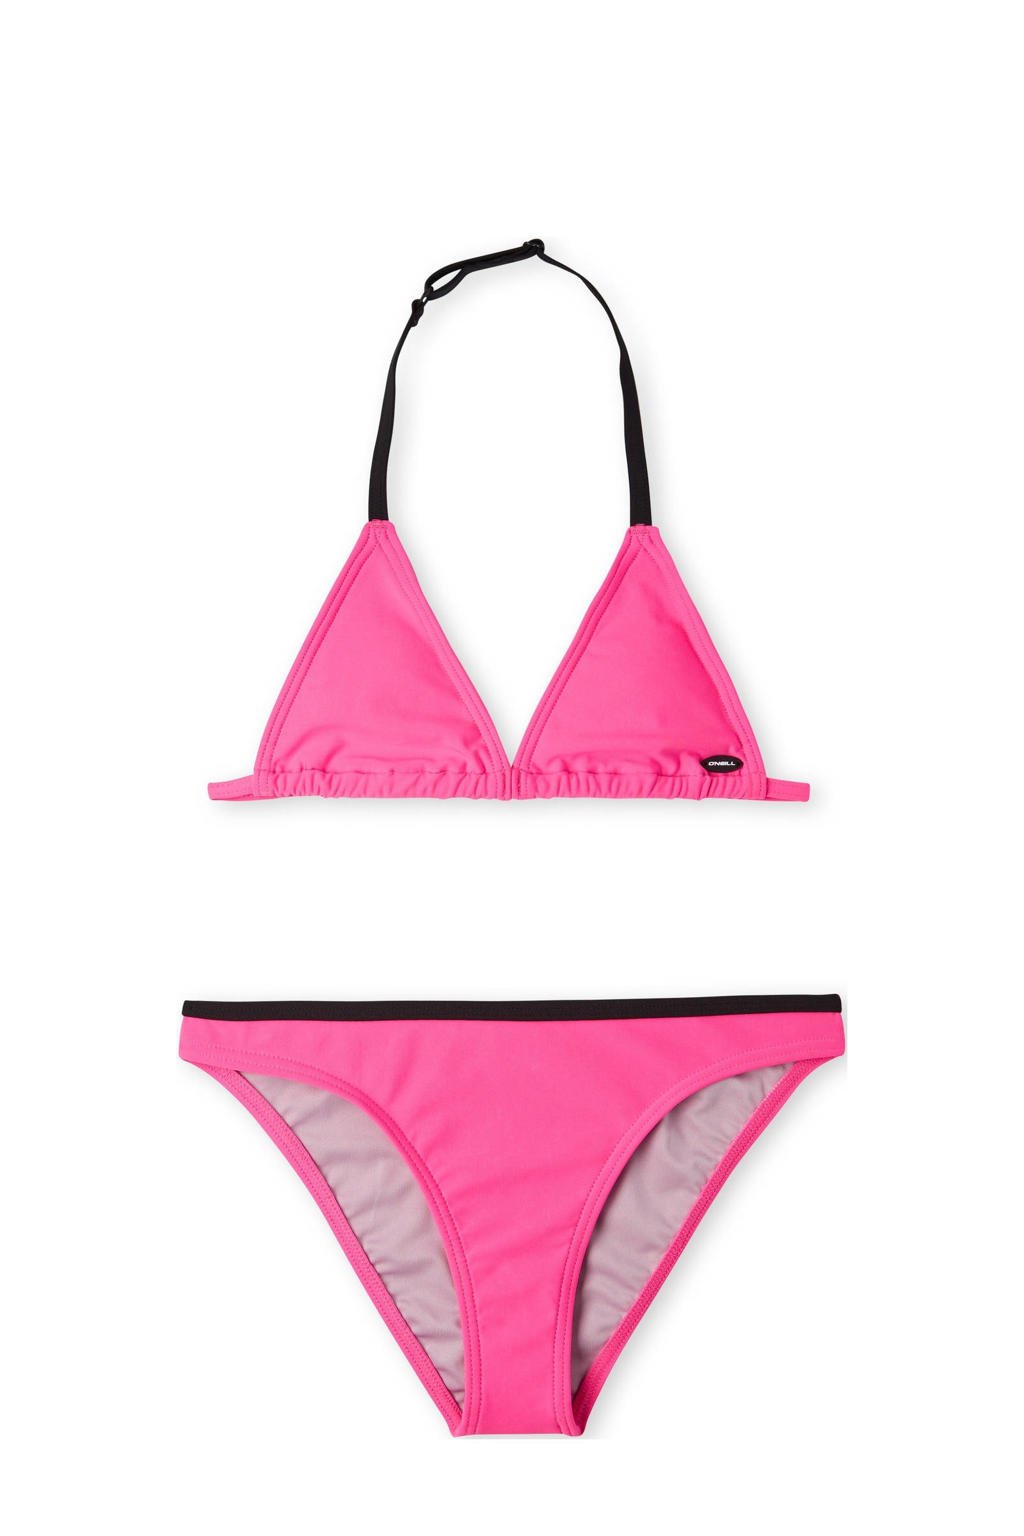 O'Neill triangel bikini Essentials roze